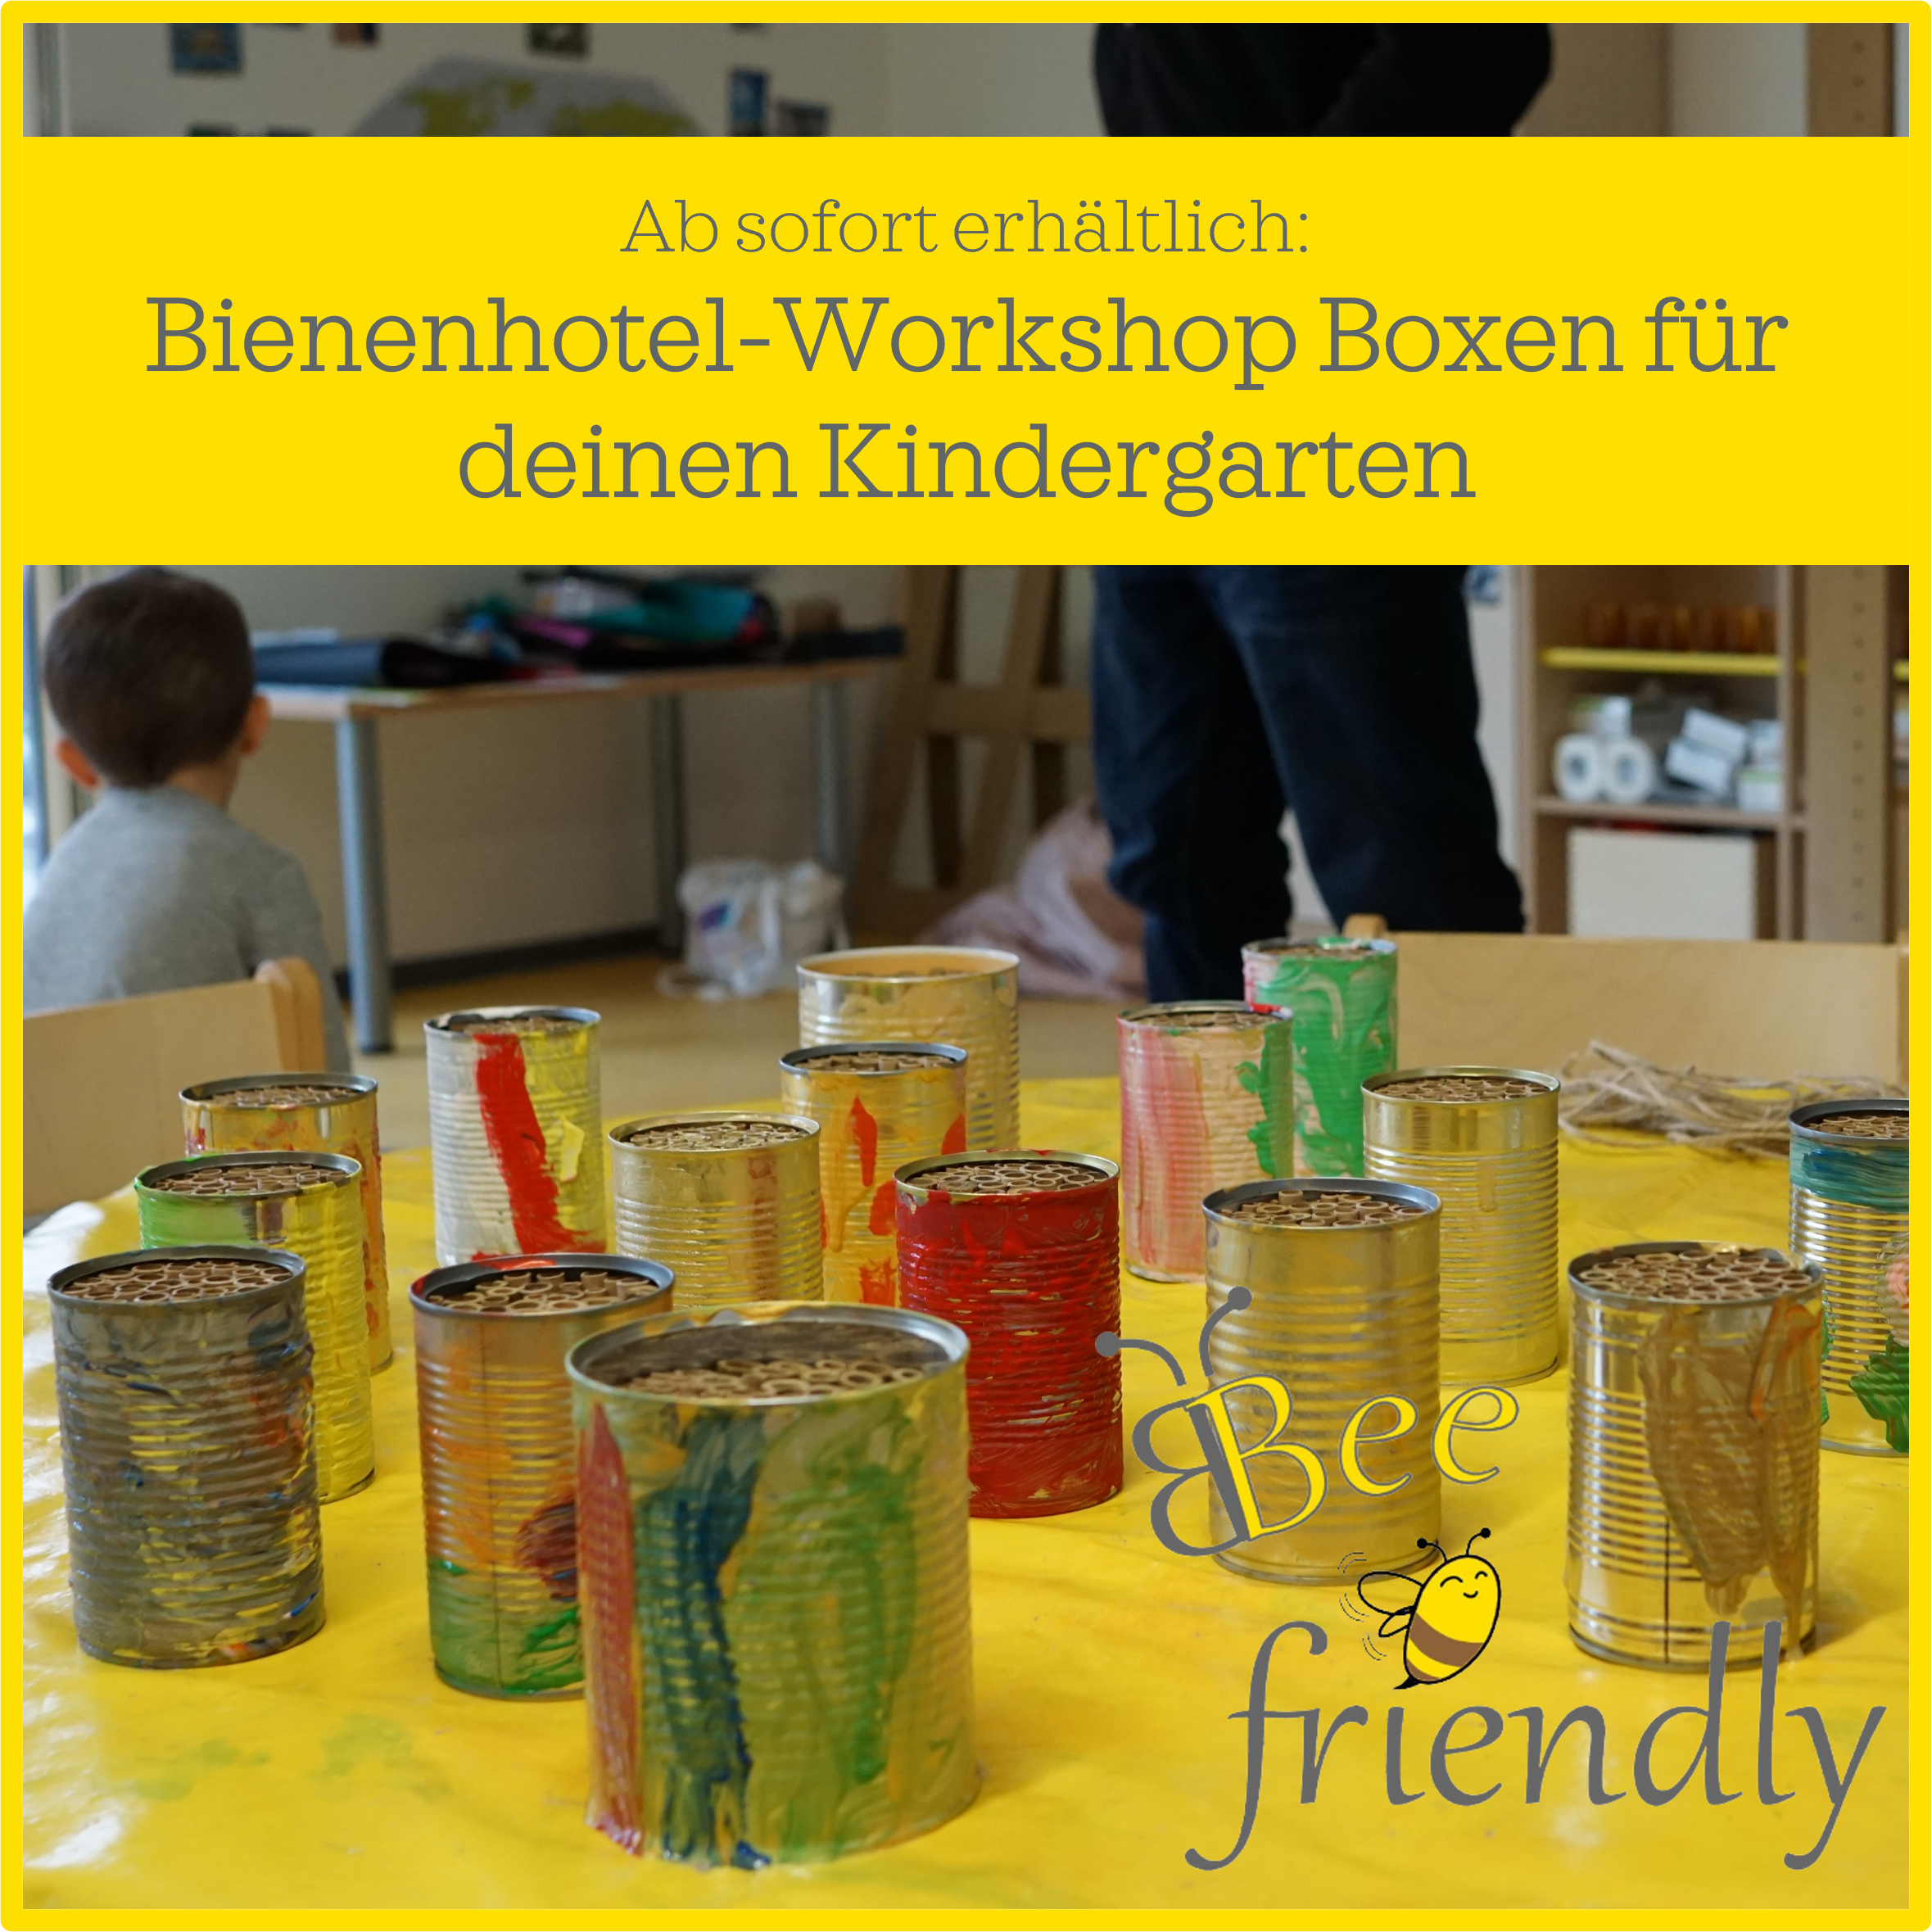 Bienenhotel-Workshop jetzt auch in deinem Kindergarten